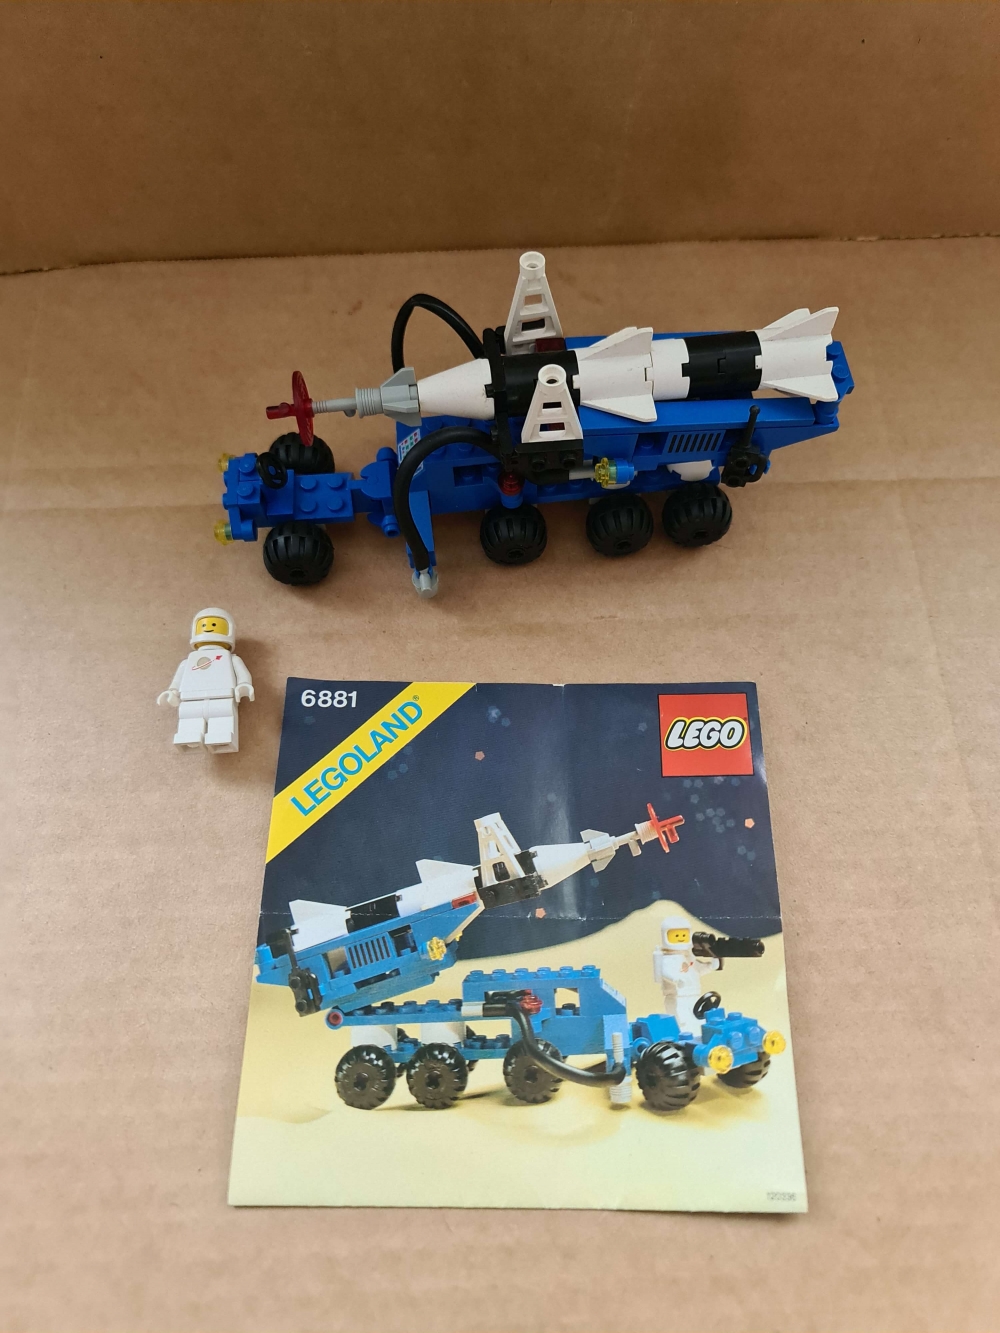 Sett 6881 fra Lego Classic Space serien.
Flott sett. Komplett med manual.